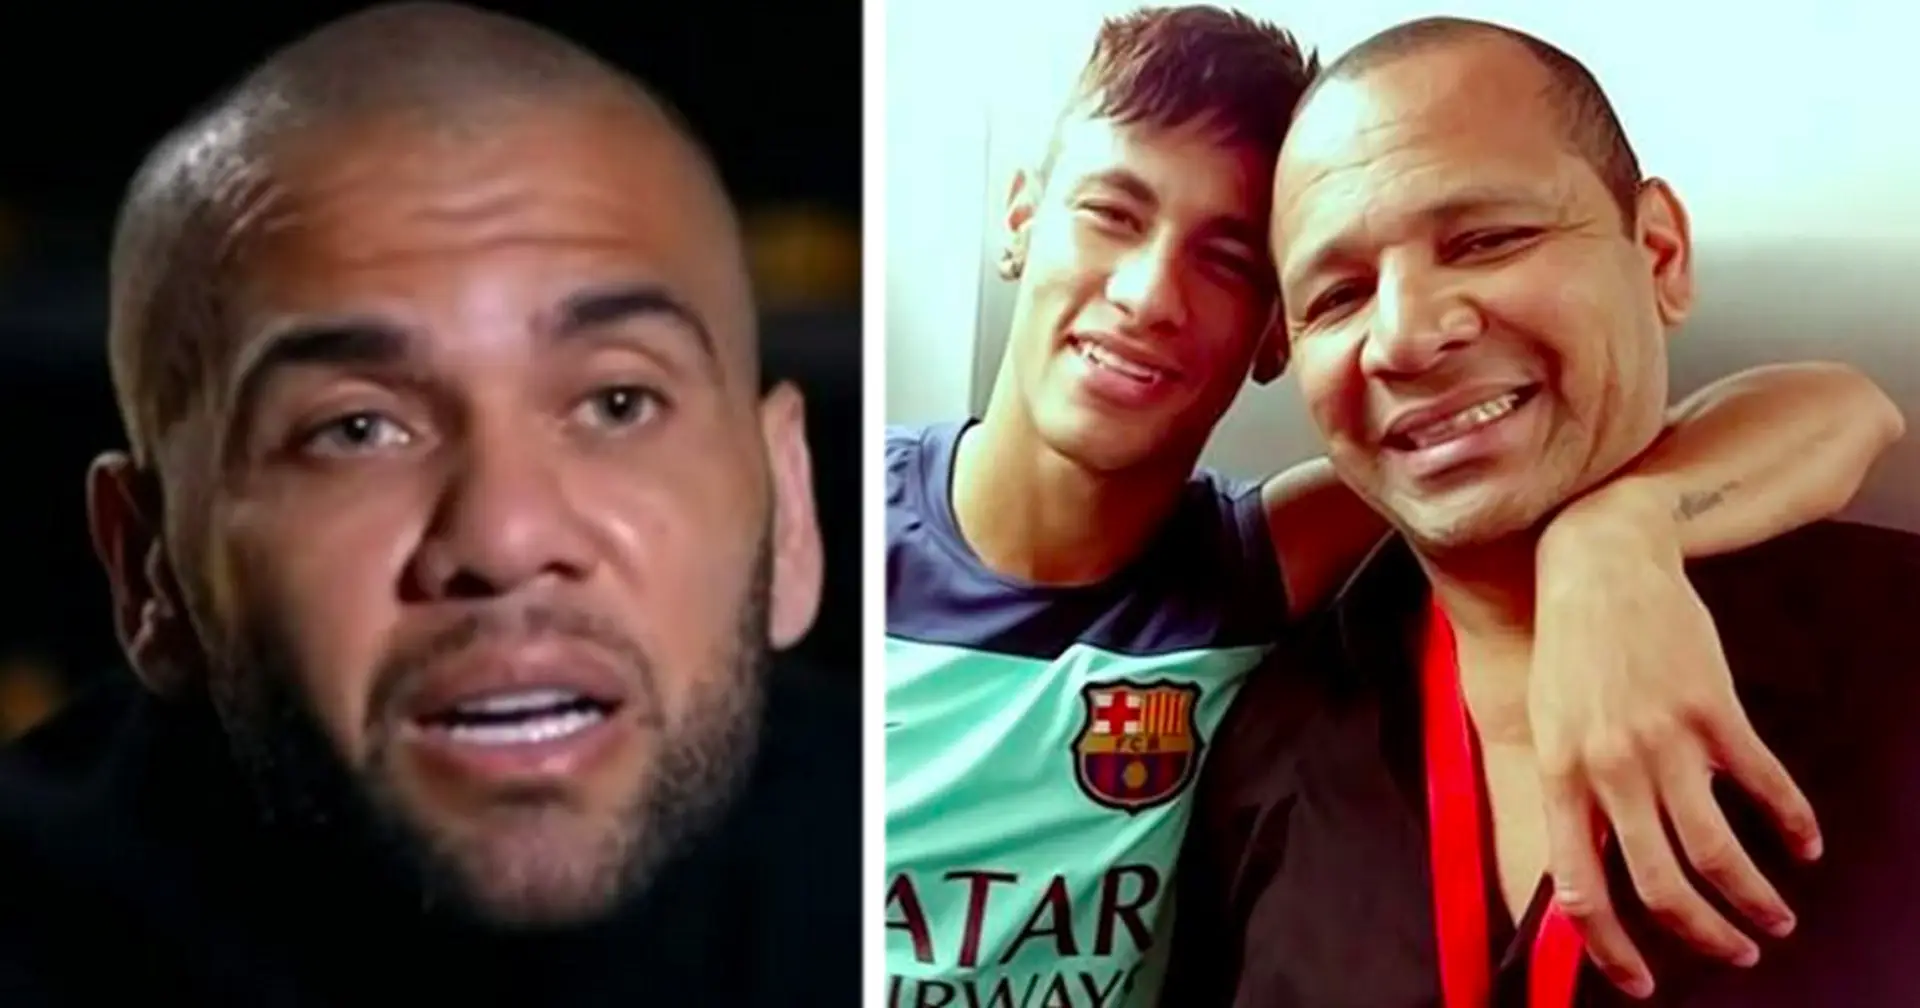 Le père de Neymar "transfère 150 000 €" aux tribunaux espagnols – cela pourrait contribuer à réduire la peine de prison de Dani Alves